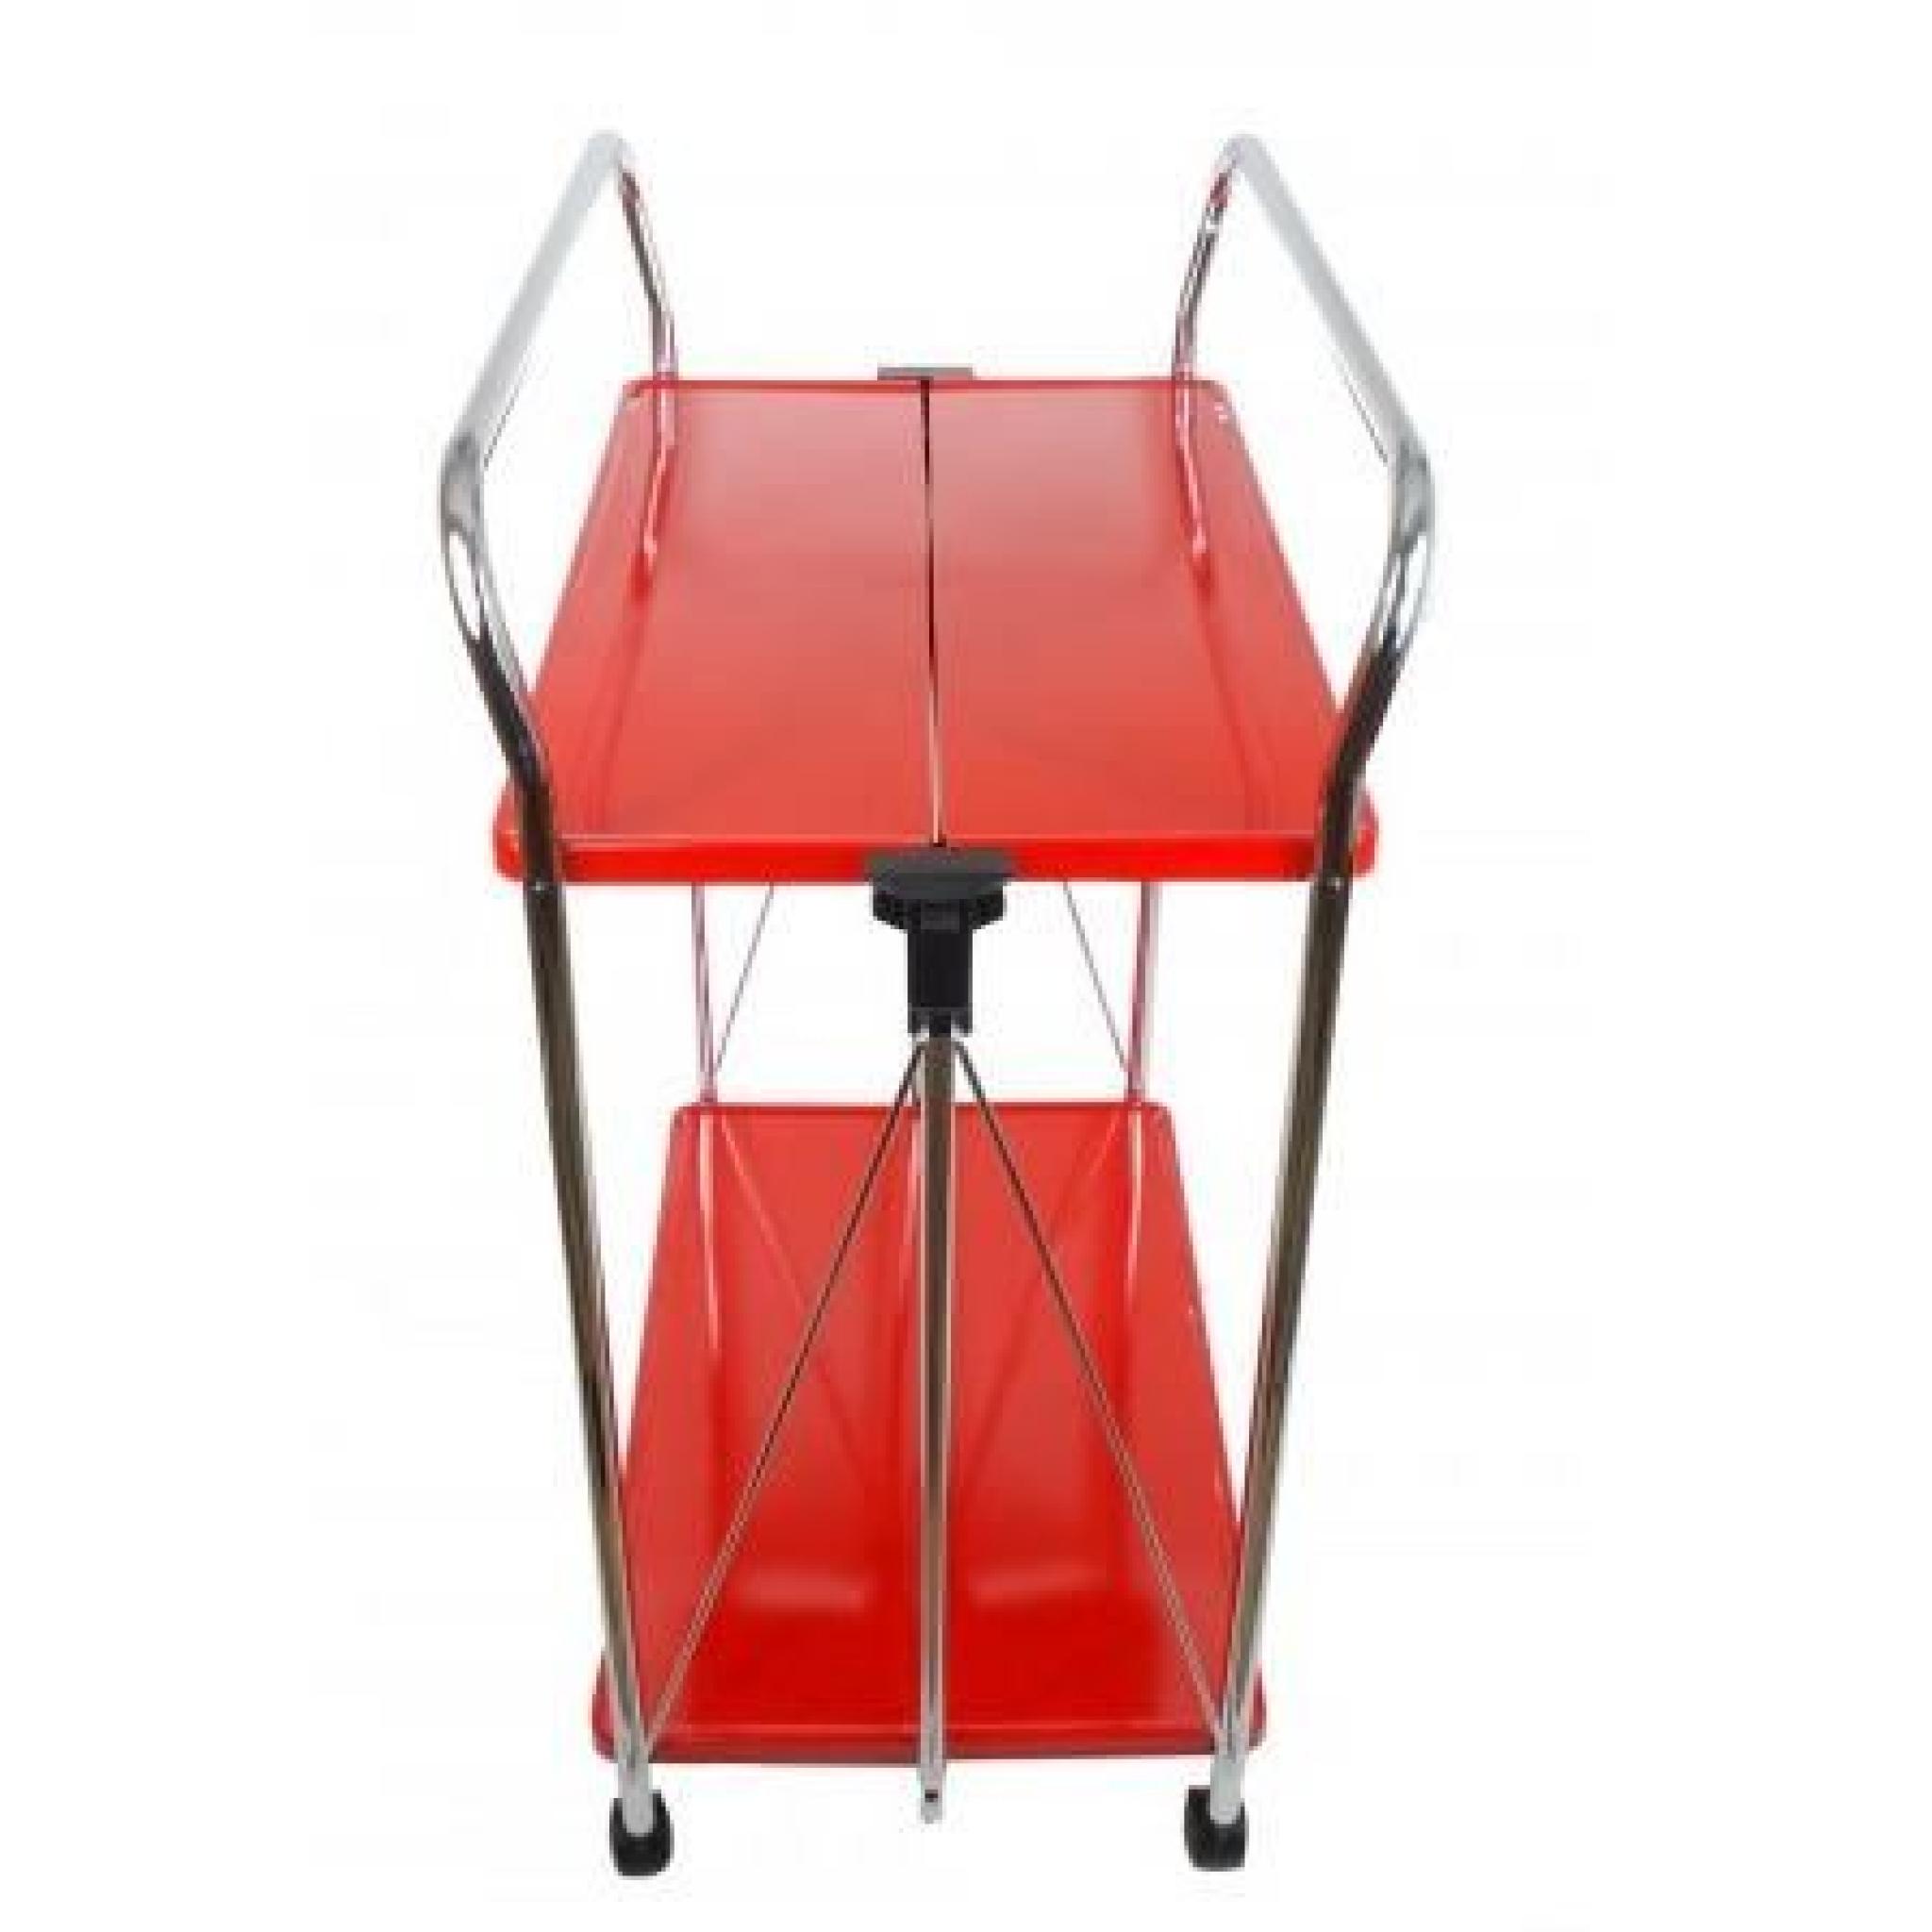 Table Roulante Rouge Pliable - 2 étages pas cher